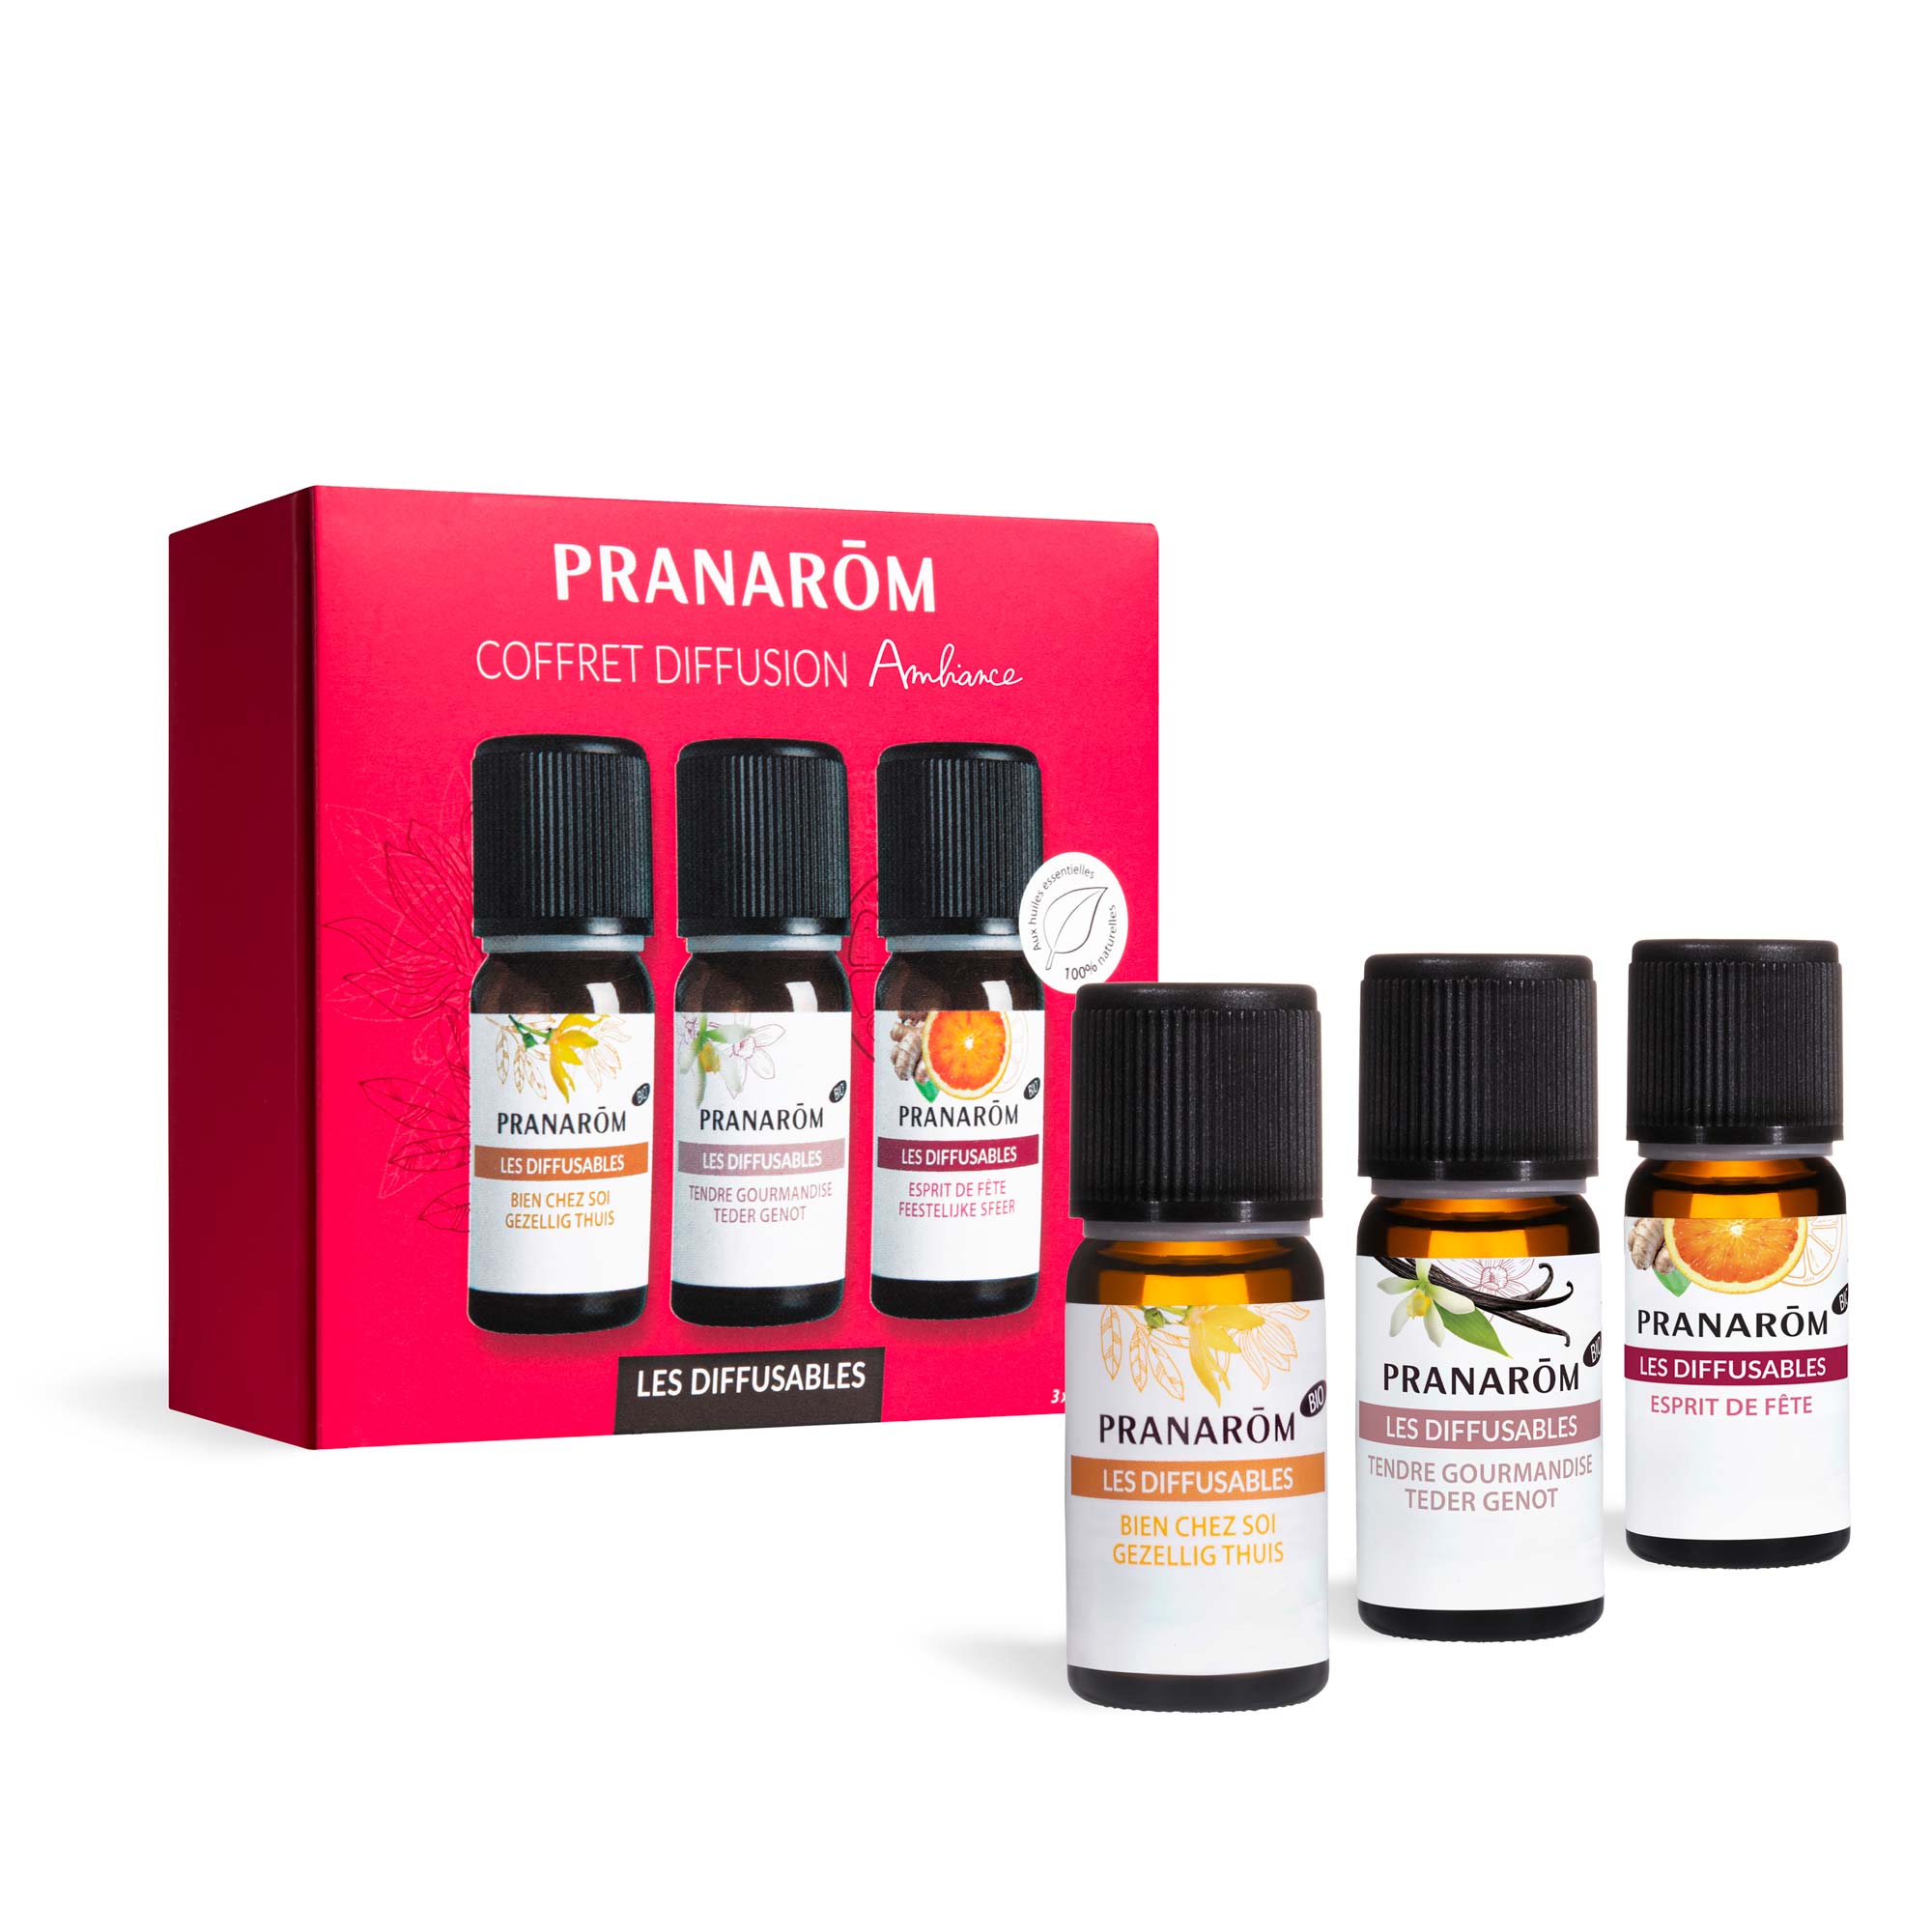 Aujourd'hui on teste le nouveau diffuseur POP de chez Pranarom avec les  huiles essentielles diffusables Vanille/Canelle ! Une douce odeur sucrée  🌱🍁🍂, By Pharmacie Parjadis